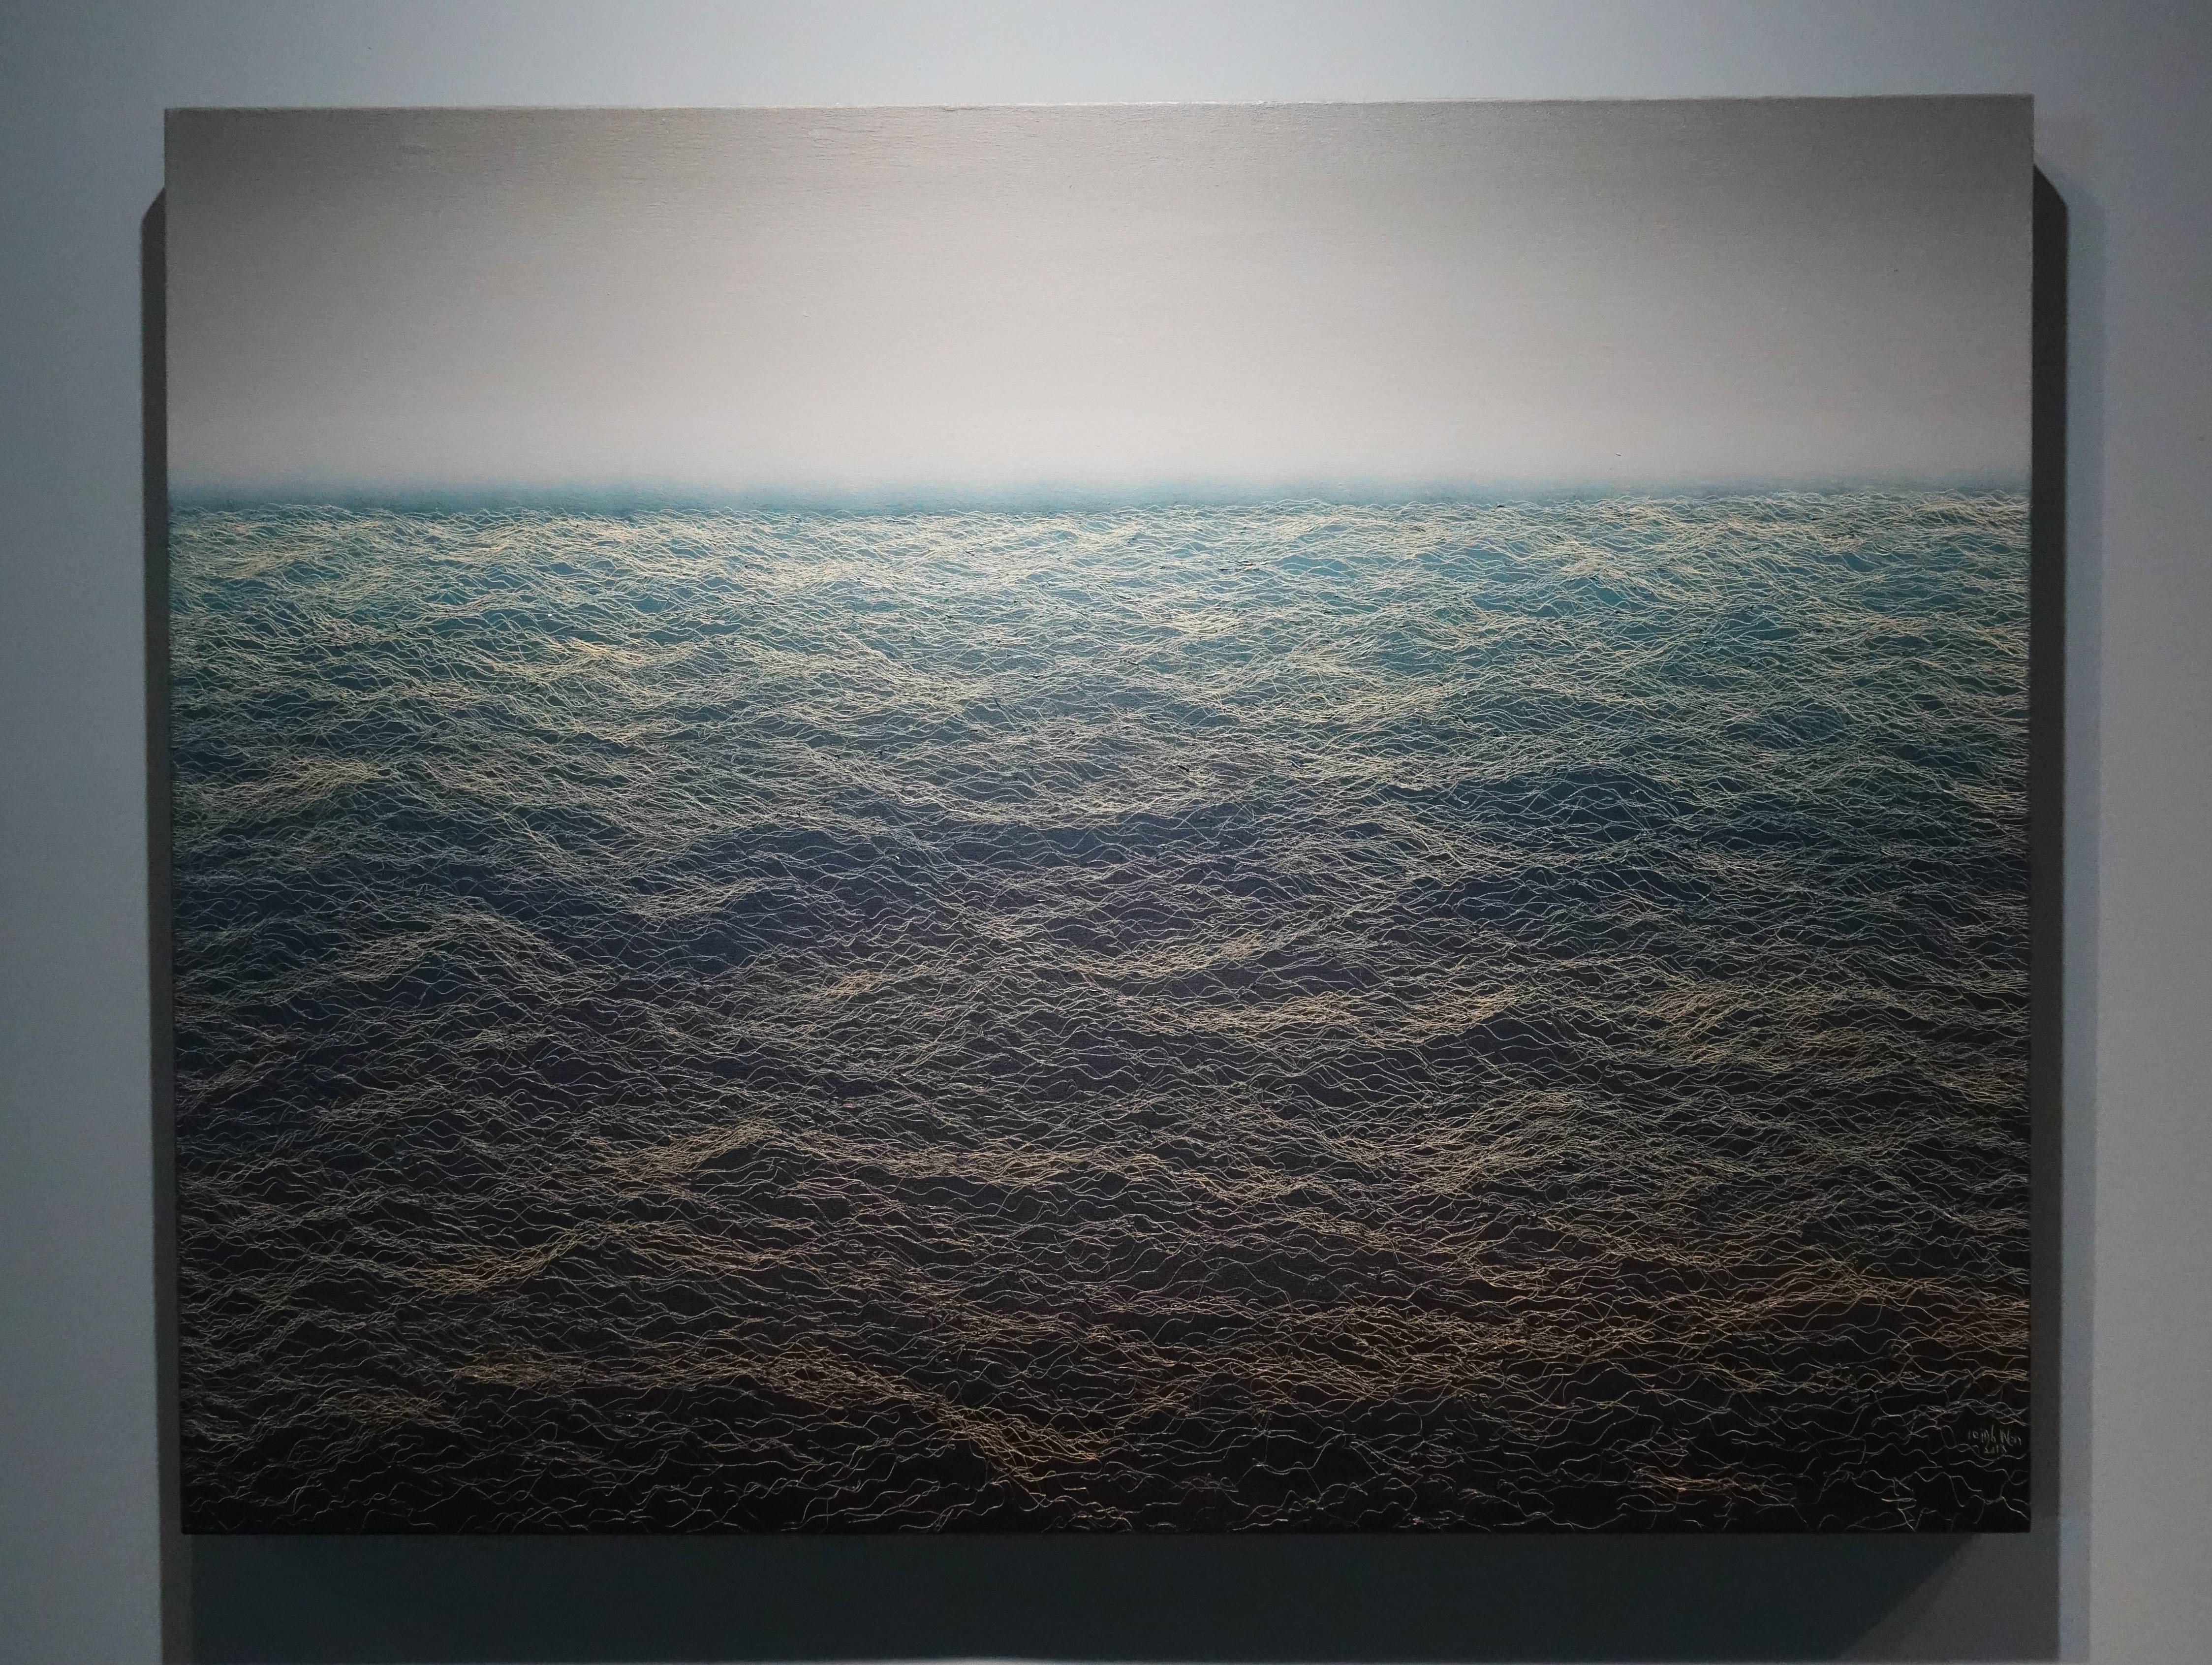 鄭麗雲，《莎納克湖秋曉》，145 x 112 cm，油彩、蔴布，2018。